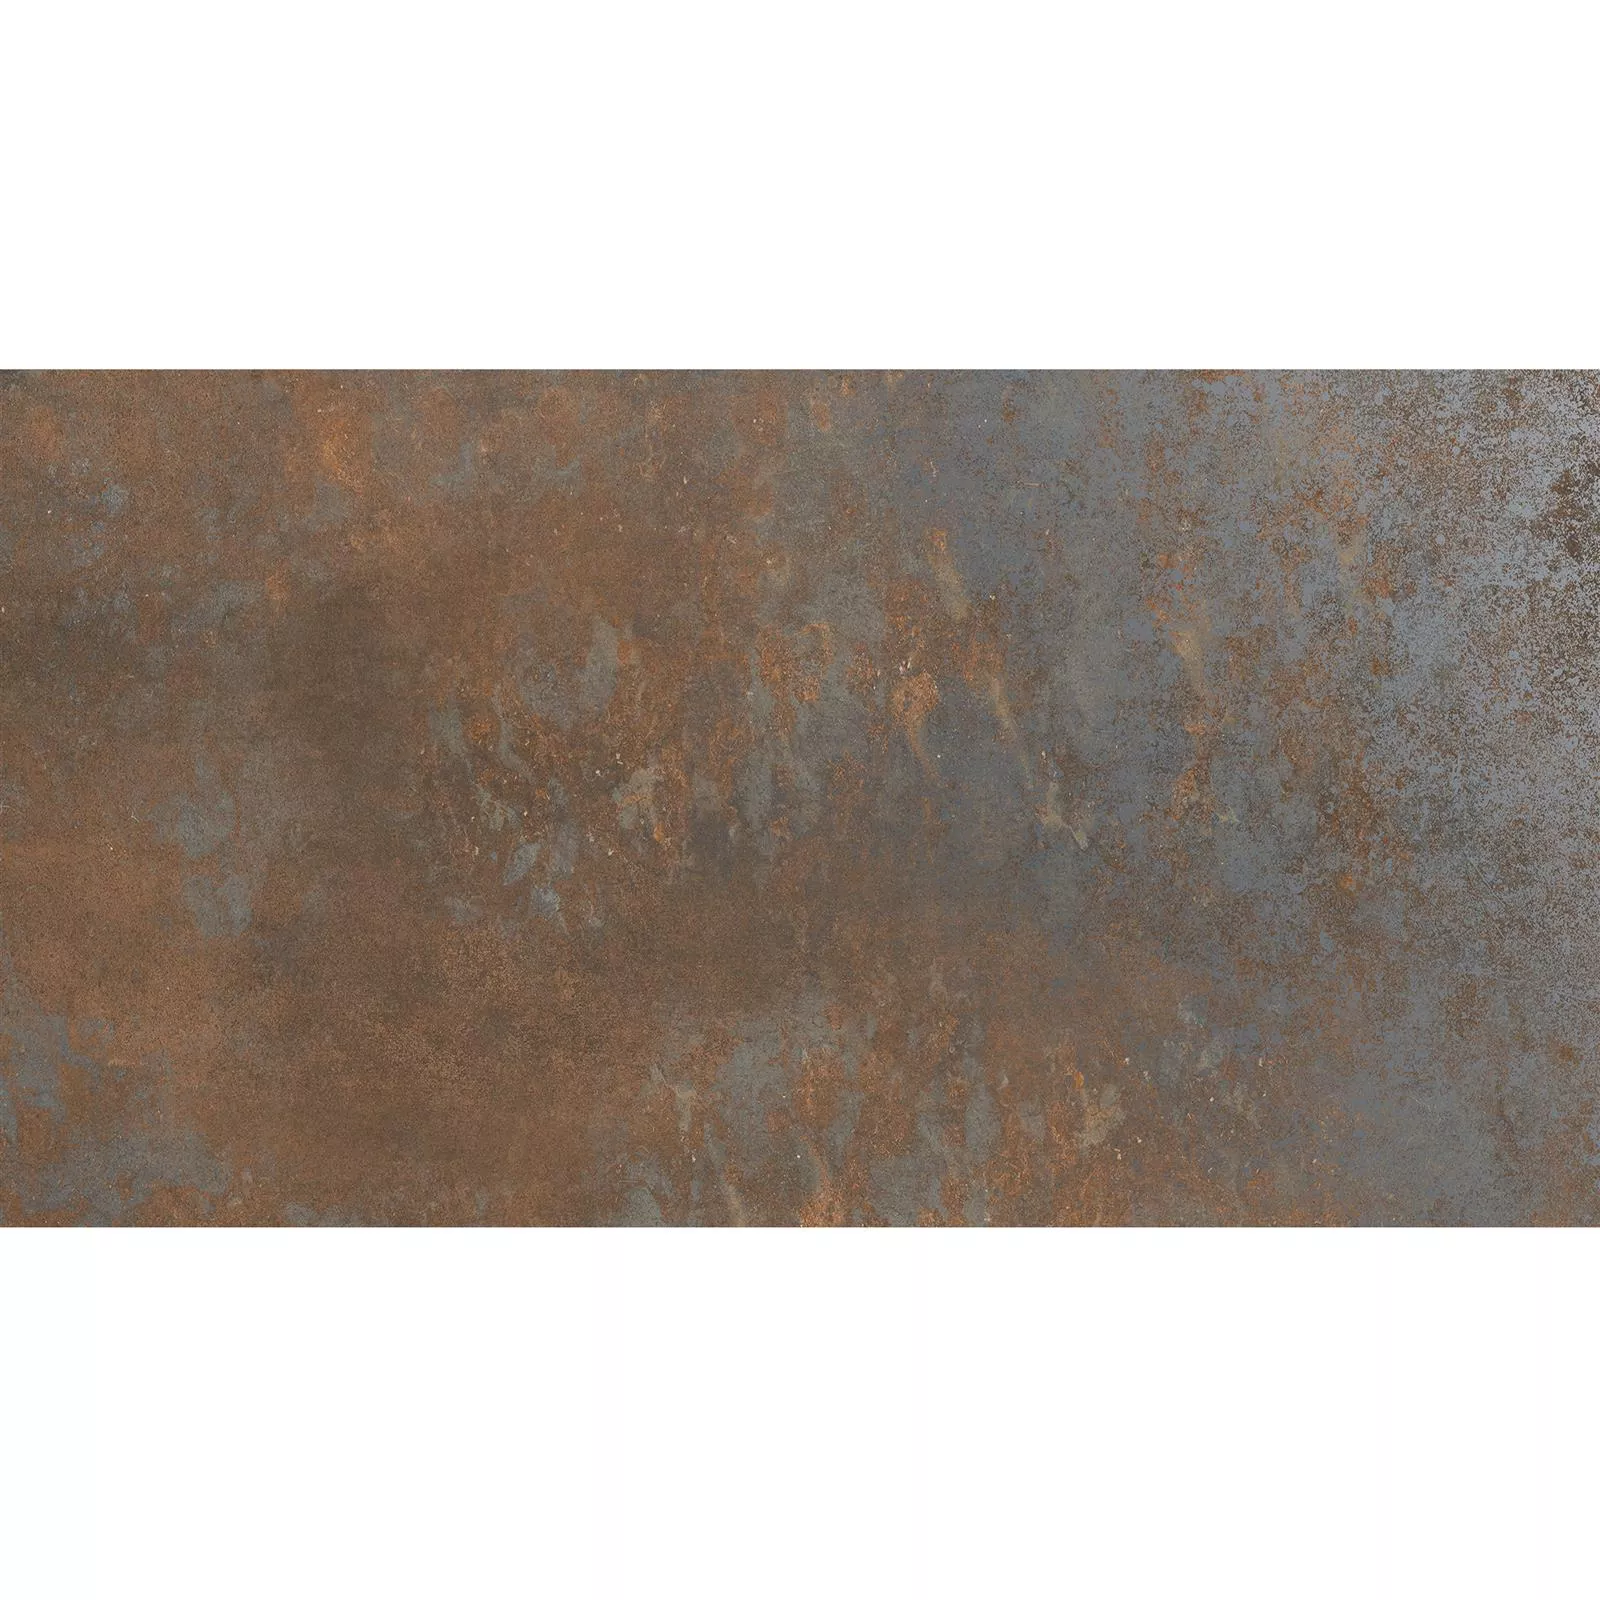 Próbka Płytki Podłogowe Sierra Metal Optyka Rust R10/B 30x60cm